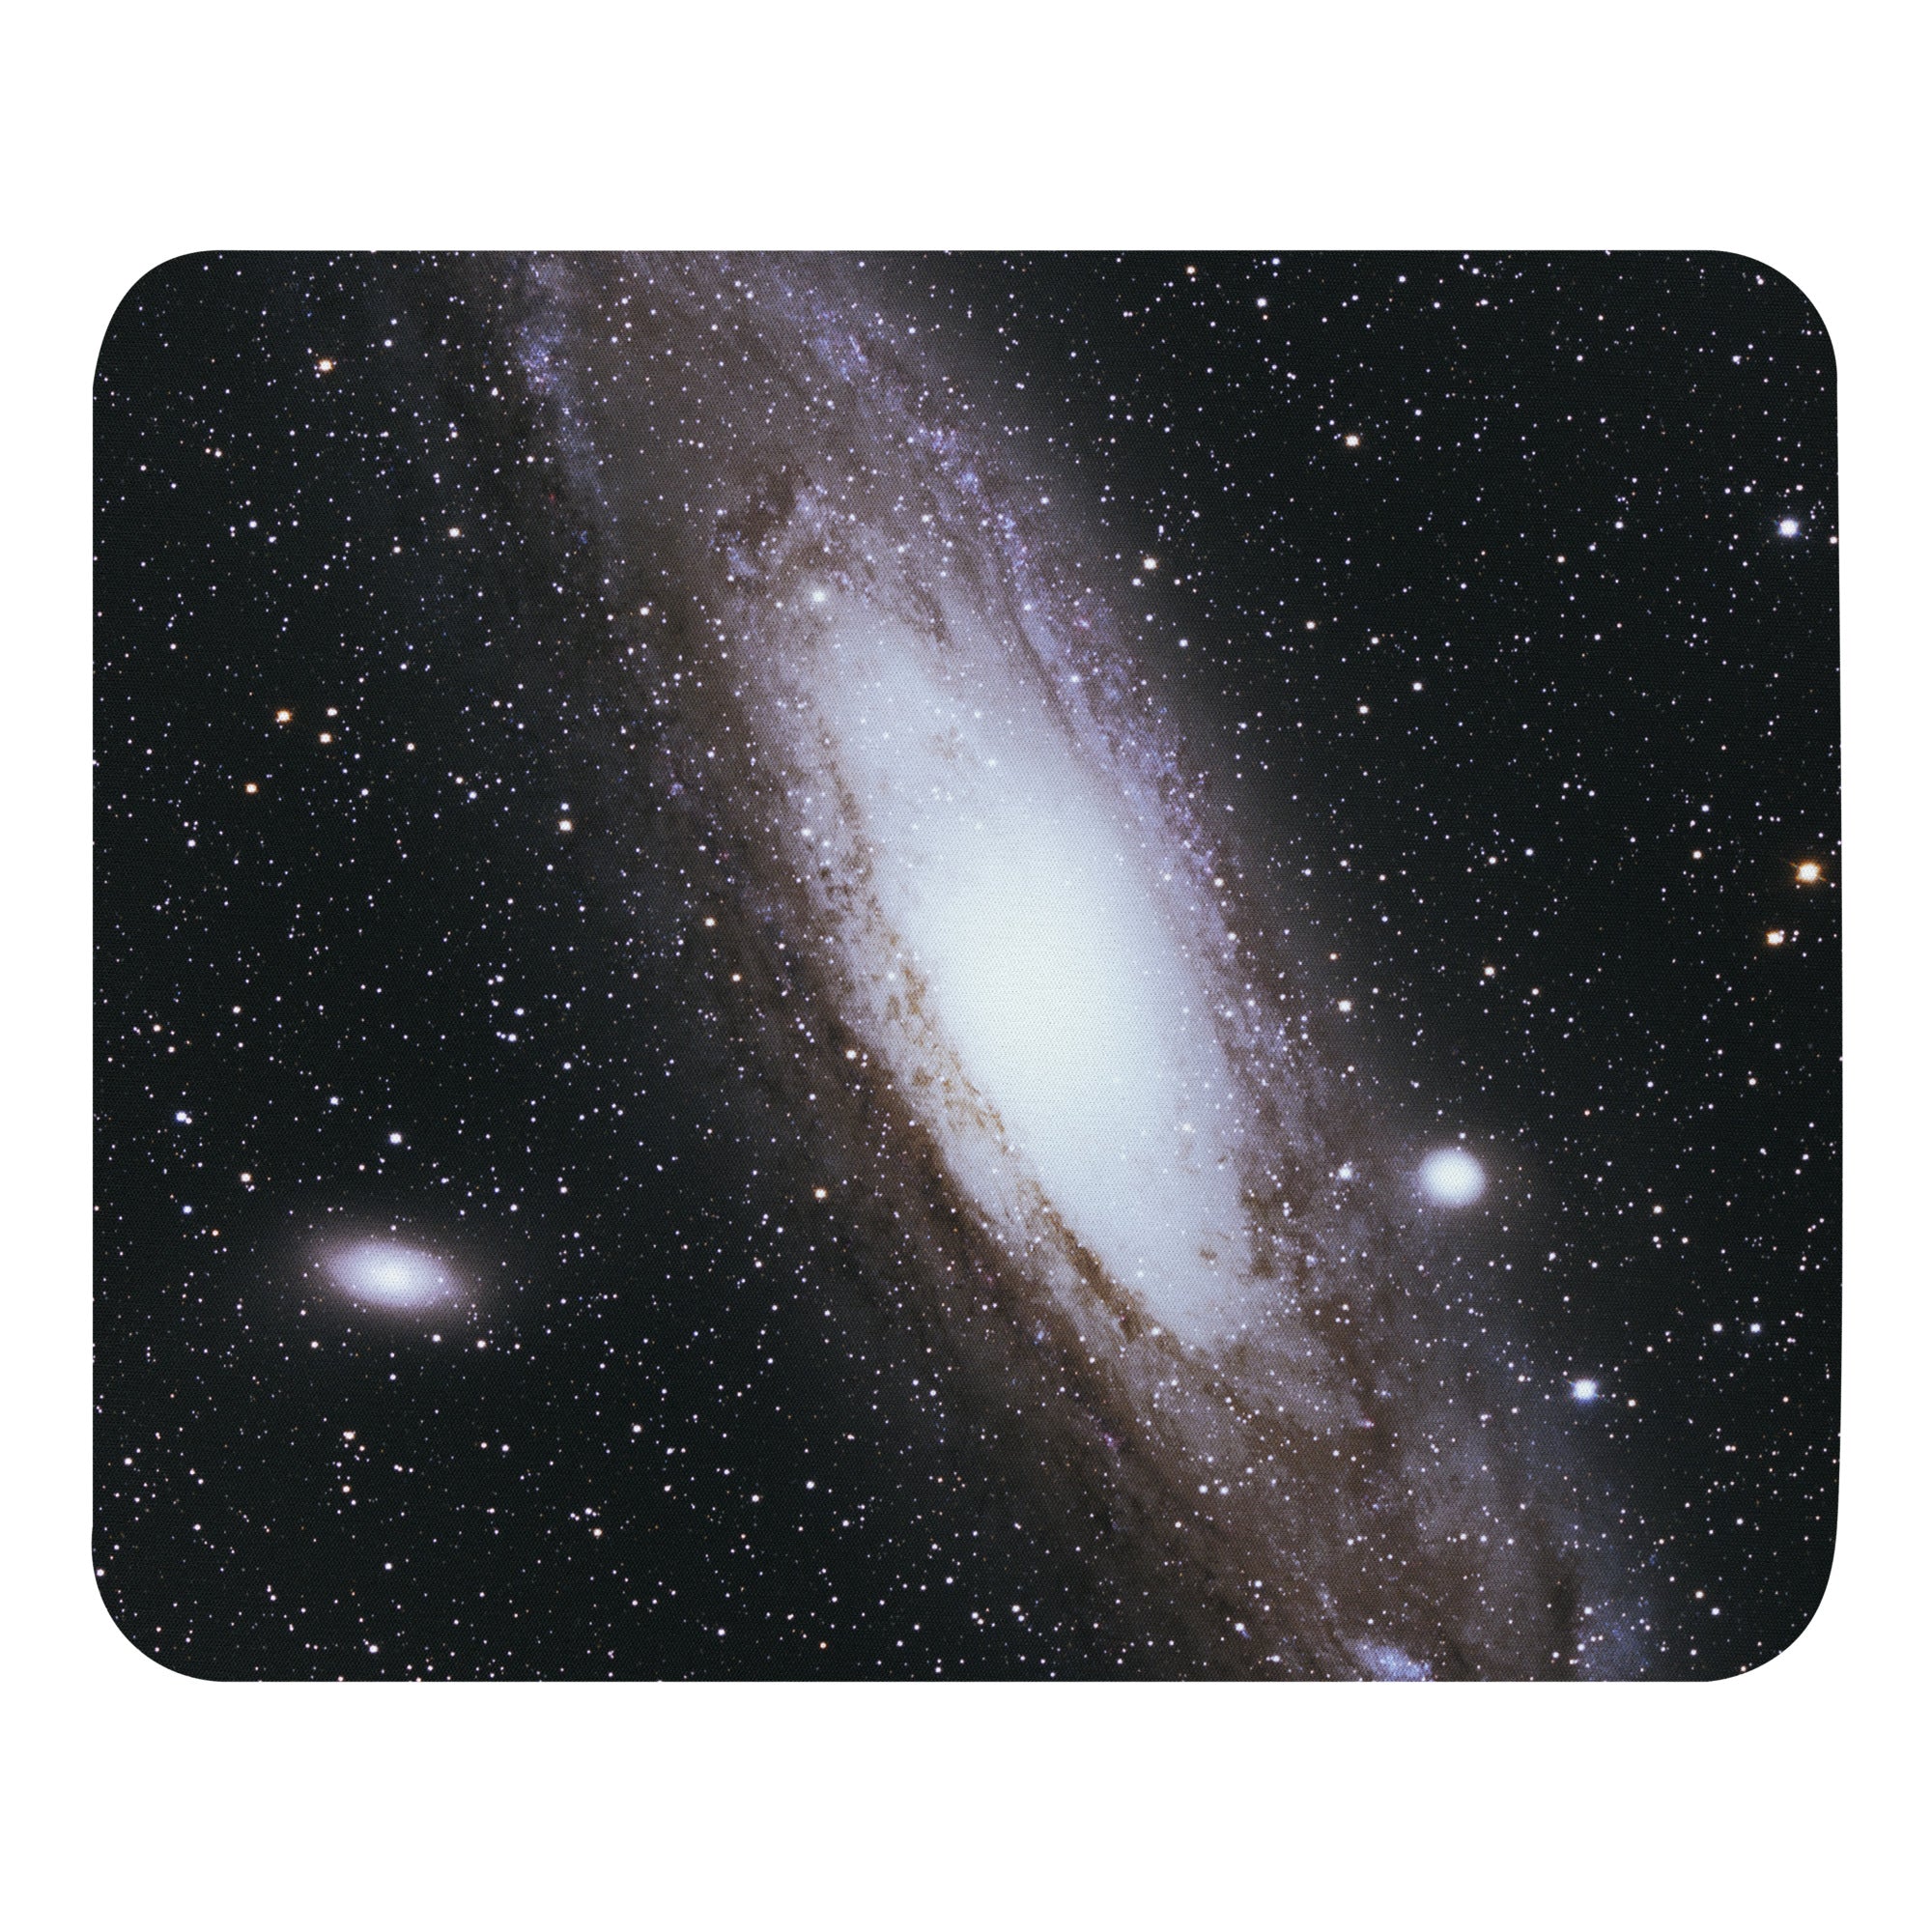 Mouse pad: Andromeda Galaxy